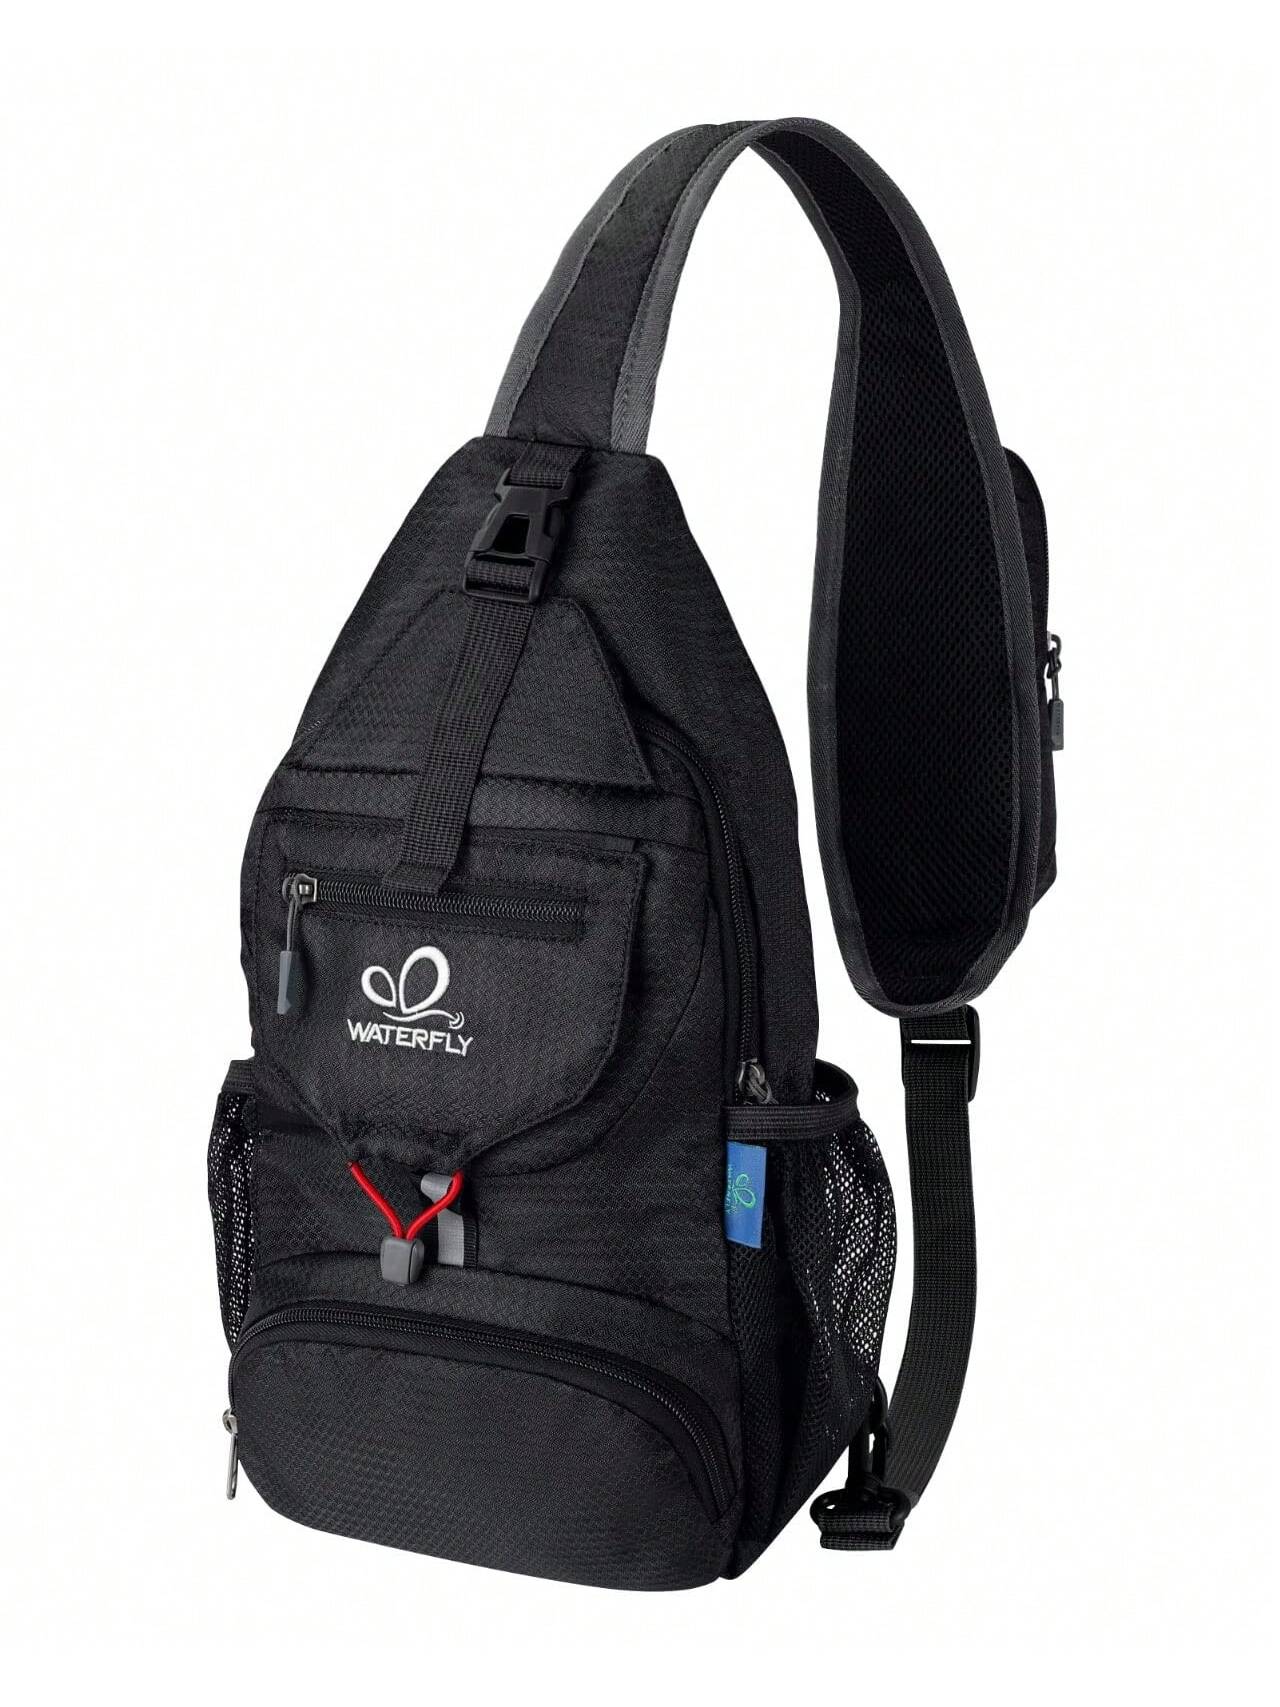 WATERFLY Packable Маленький рюкзак через плечо для мужчин и женщин Складная сумка через плечо на груди Дневной рюкзак для пеших прогулок и путешествий, черный